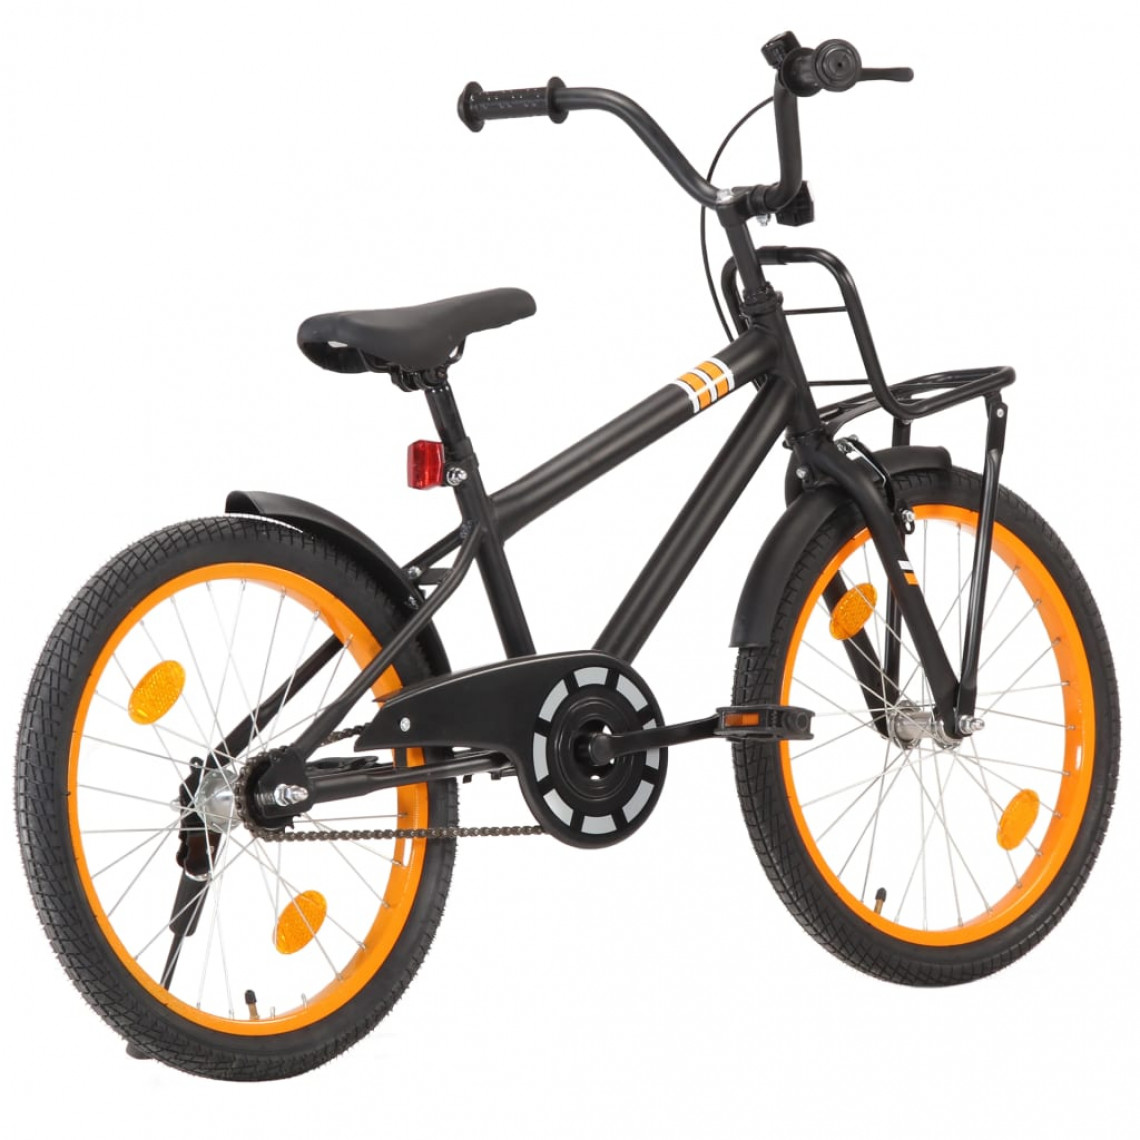 Icaverne - Superbe Cyclisme reference Brazzaville Vélo d'enfant avec porte-bagages avant 20 pouces Noir et orange - Vélo électrique